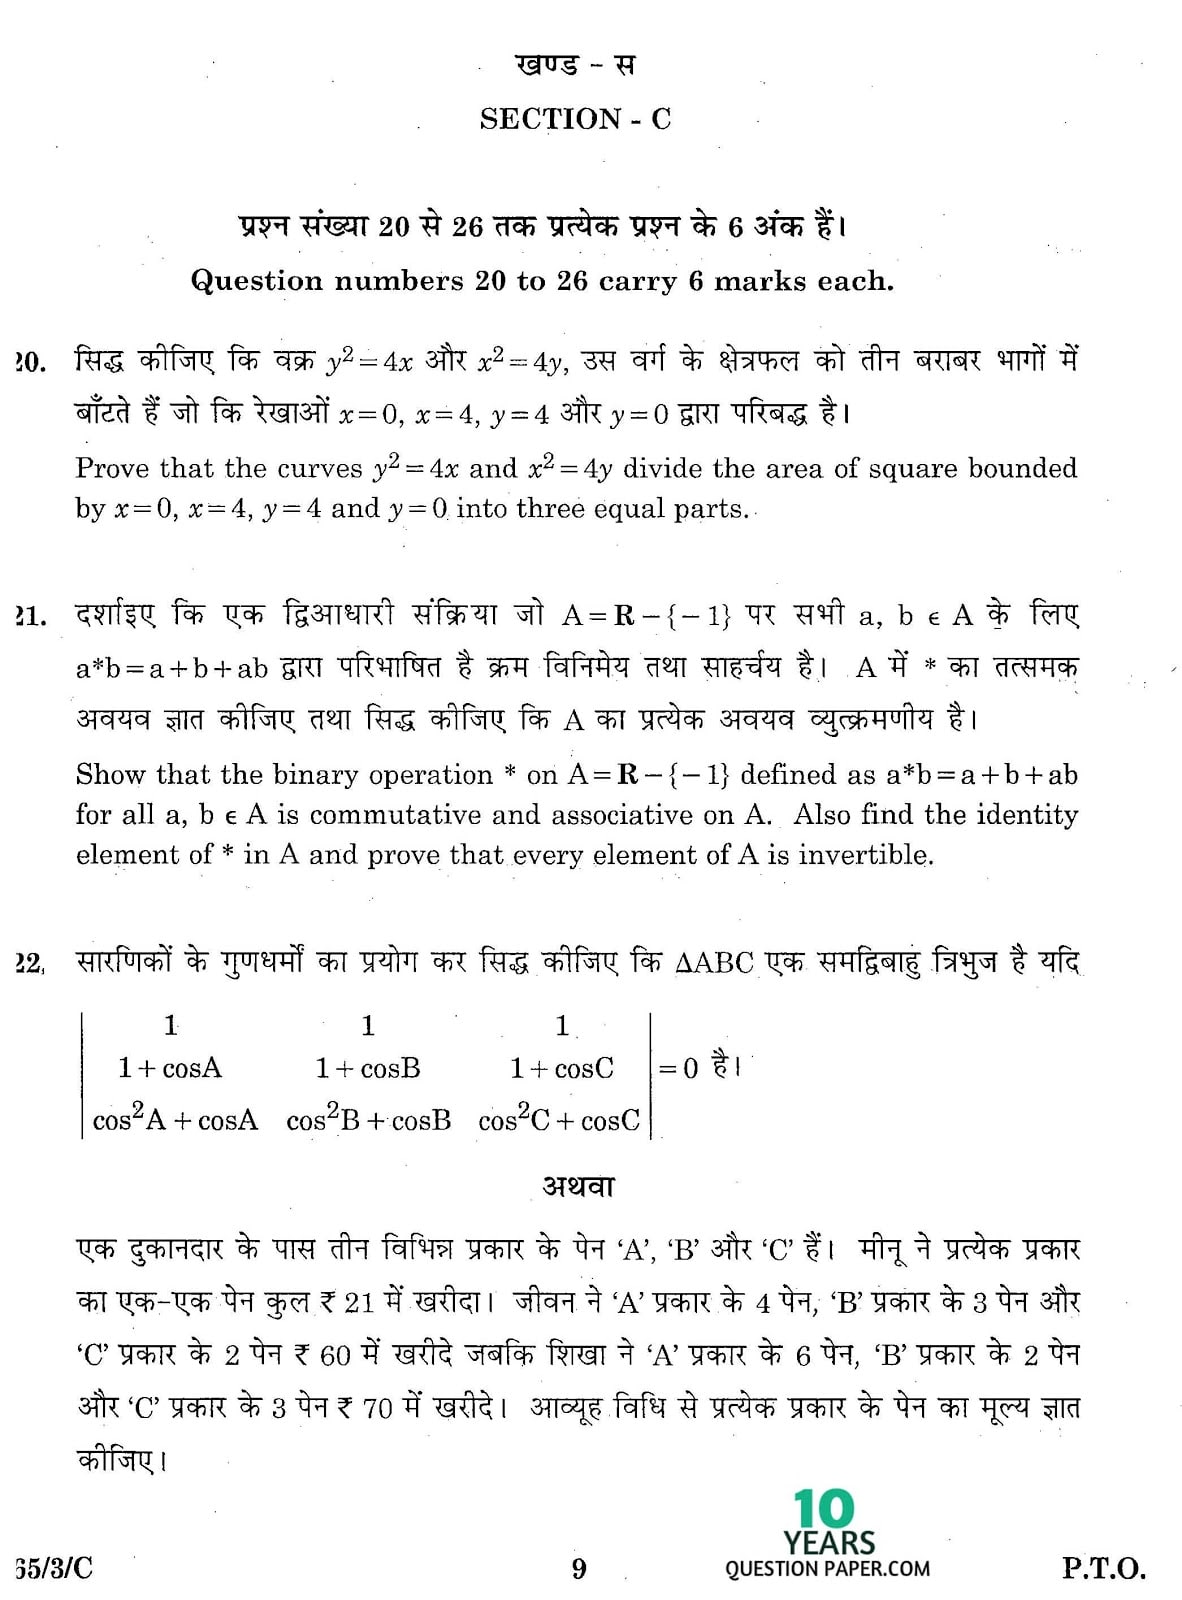 CBSE Class 12 Mathematics 2016 SET-3 Question Paper